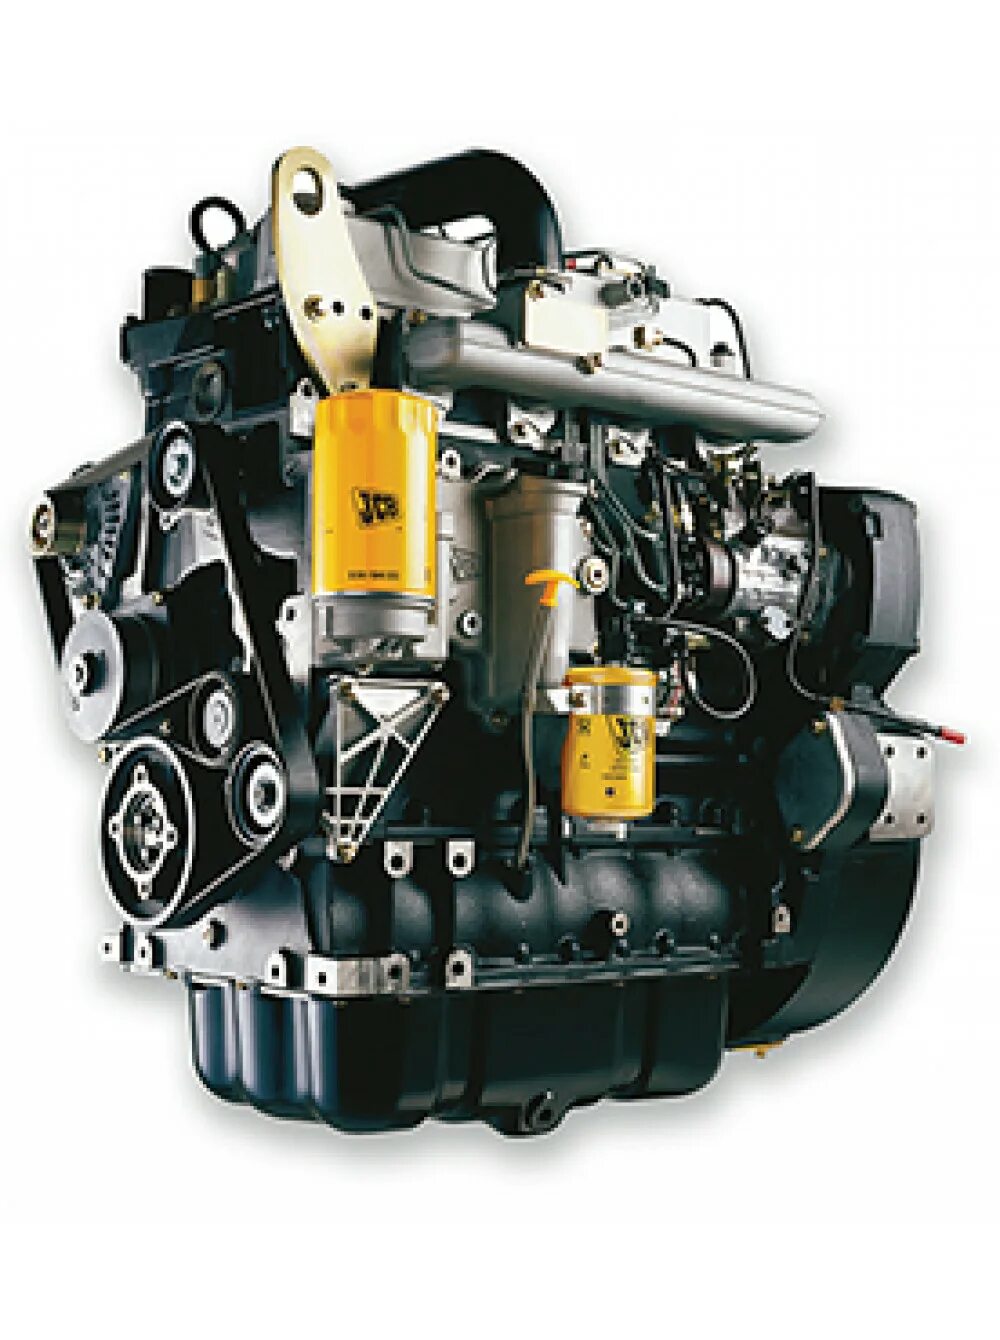 Цилиндра jcb 3cx. JCB 3cx двигатель DIESELMAX. Мотор JCB 4cx. Двигатель JCB 4cx. Двигатель Perkins JCB 4cx.